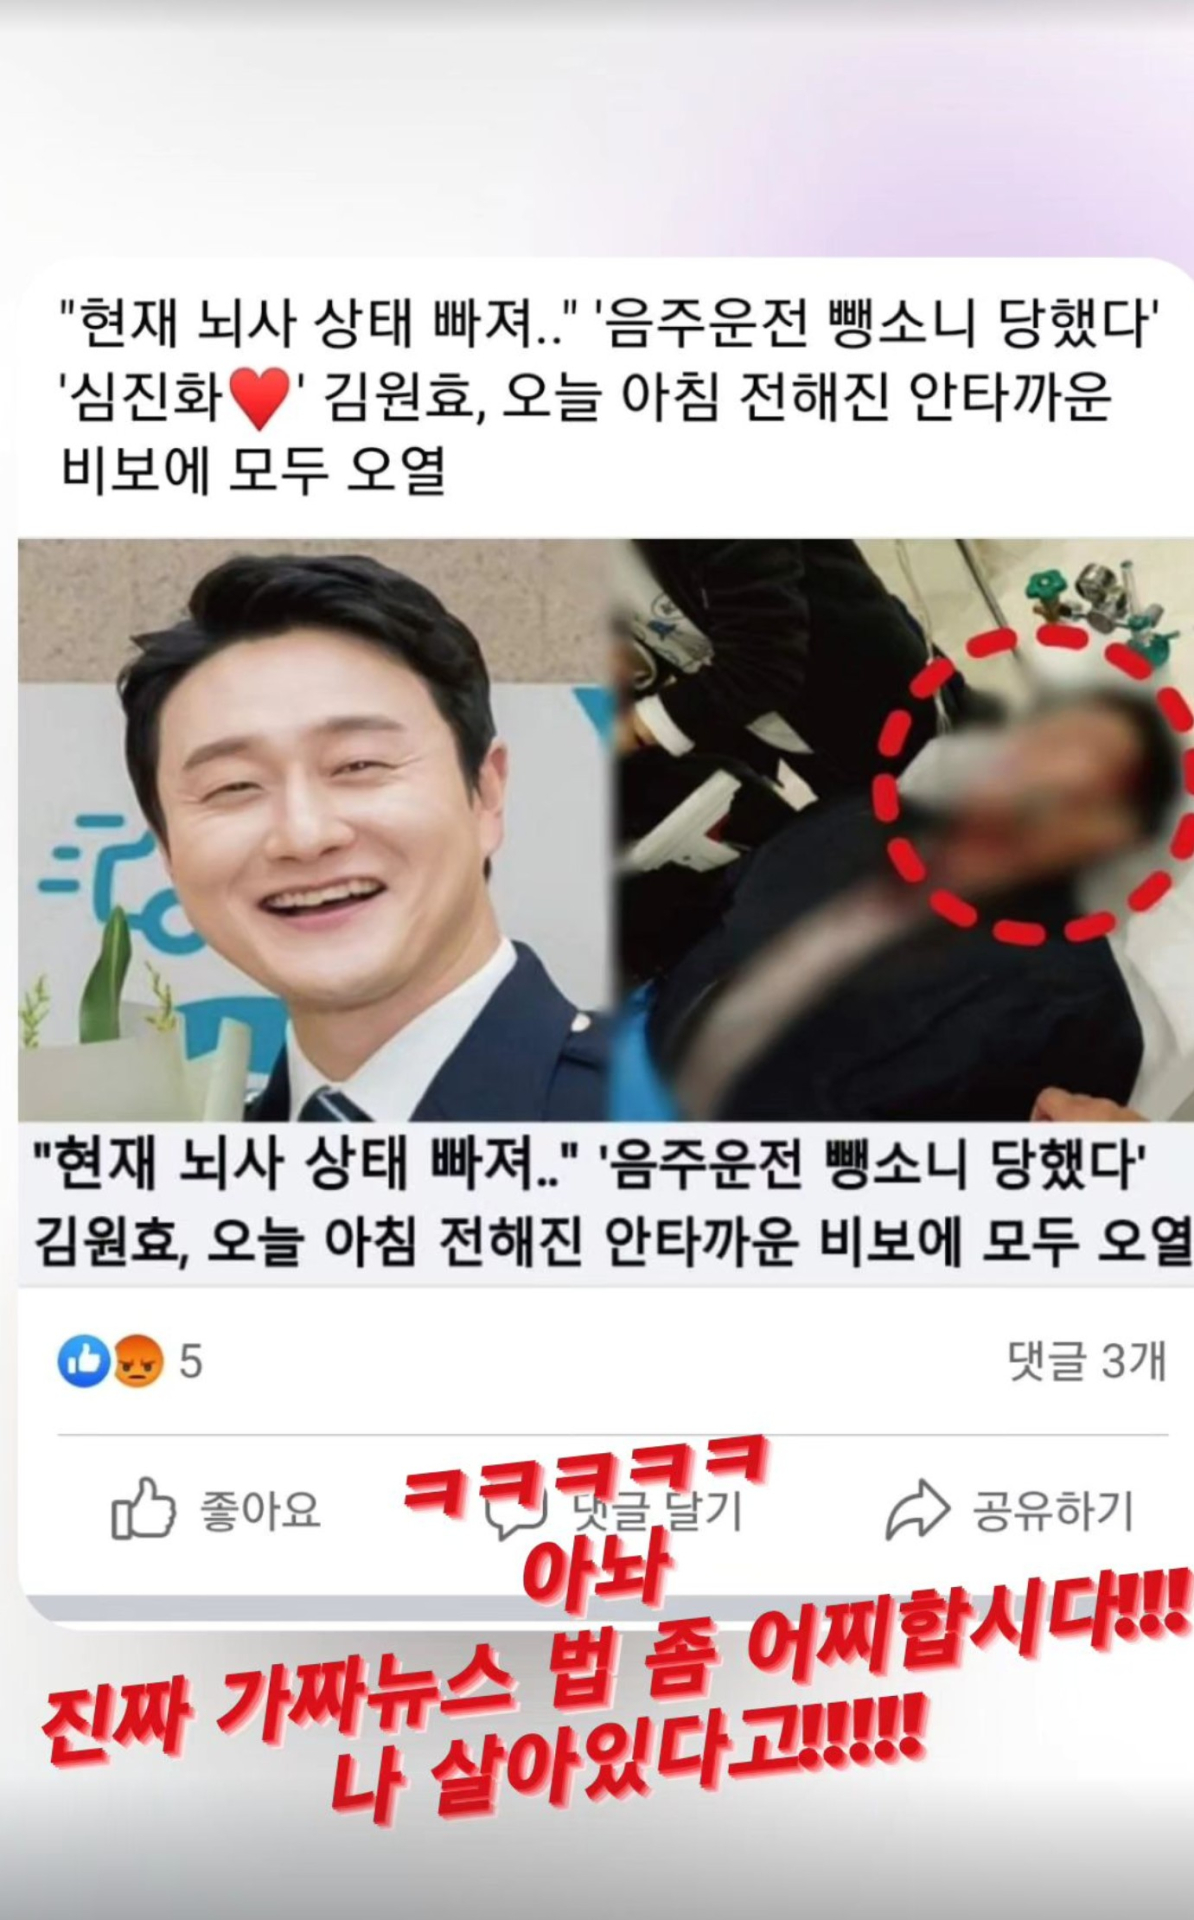 <b>김원효</b>, 음주운전 뺑소니로 뇌사? 가짜 뉴스에 분노 “살아있다고”